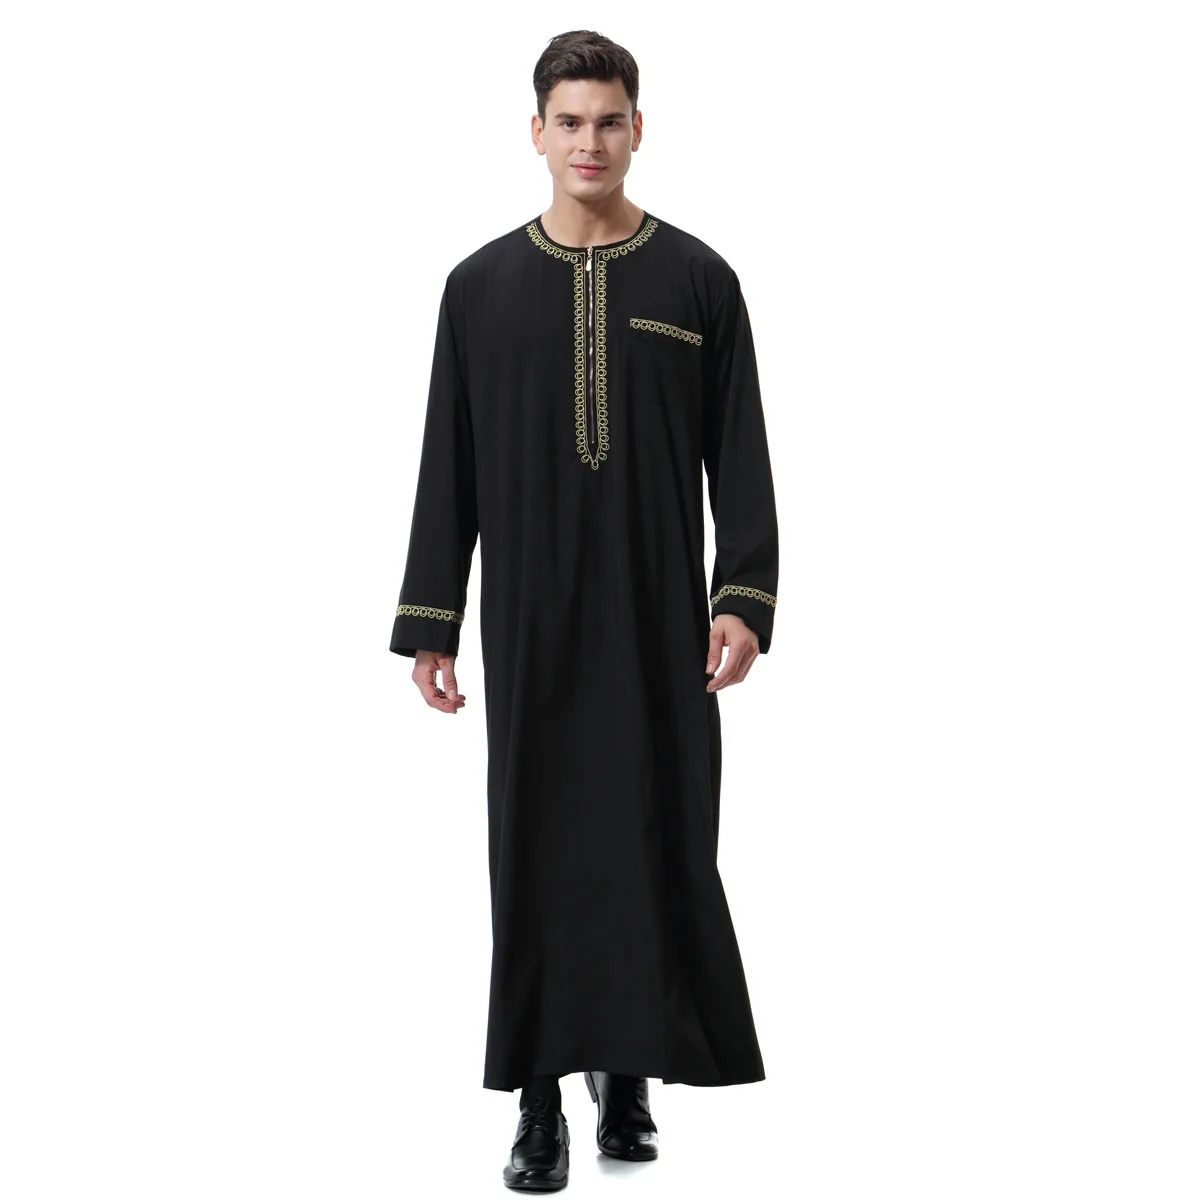 Халат с длинным рукавом мусульманский ислам Саудовская Аравия одежда мужская Арабская абайя ТОБ Пакистан национальные костюмы кафтан Ближний Восток плюс